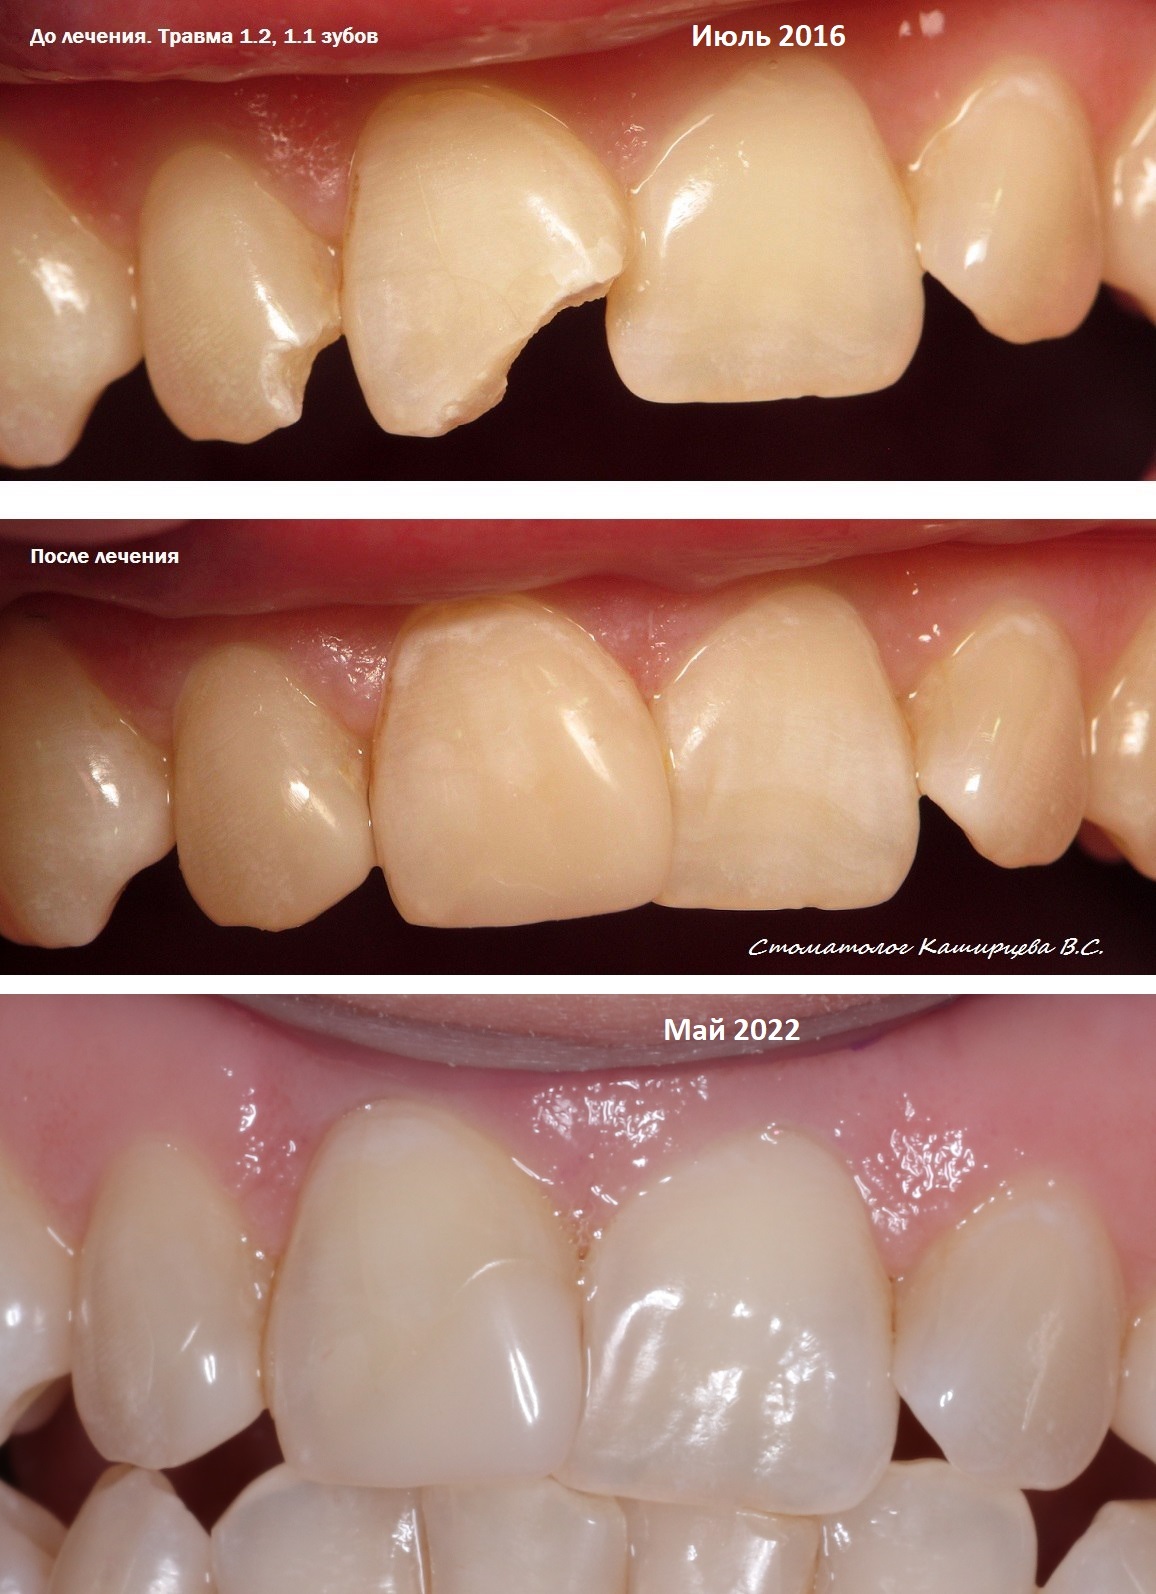 Реставрация зубов до и после. Типы реставраций